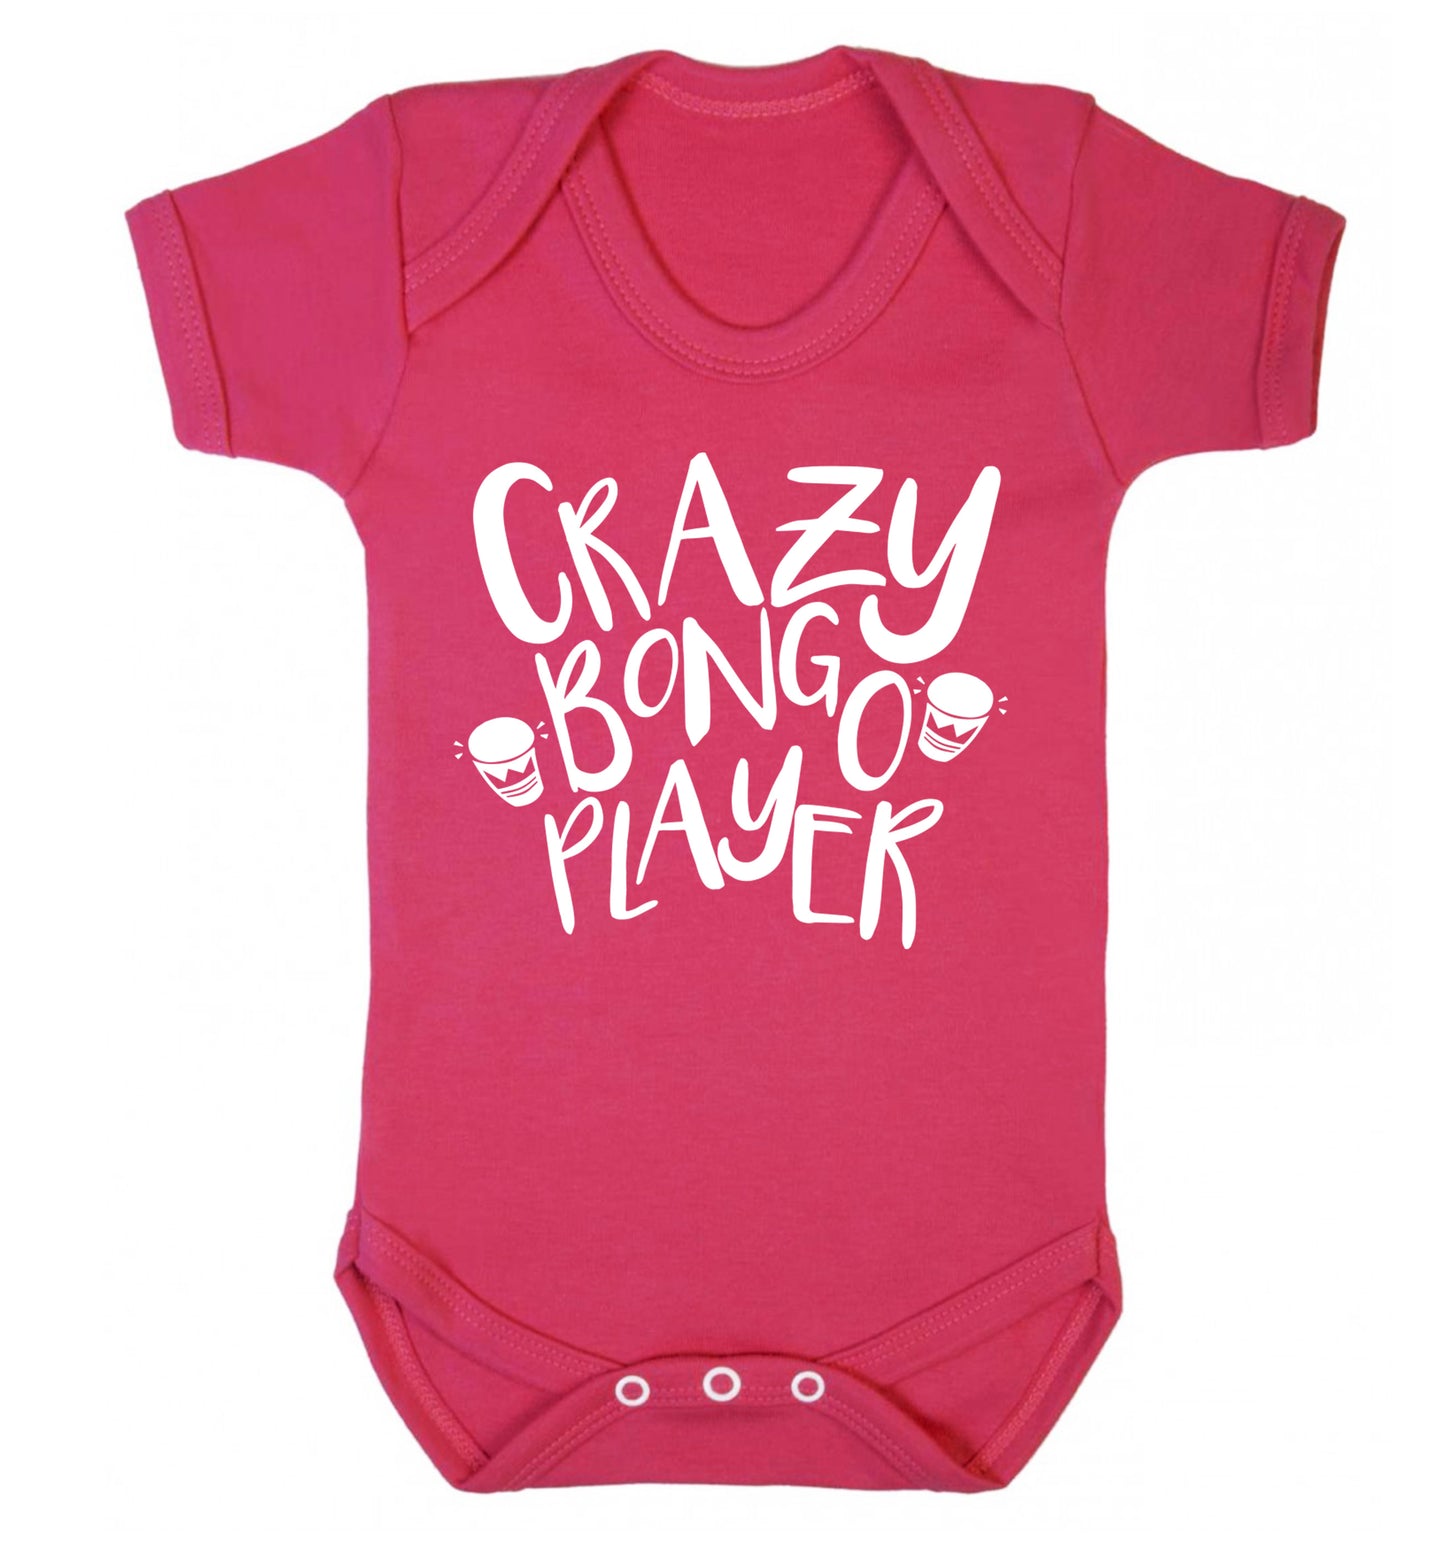 Crazy bongo player Baby Vest dark pink 18-24 months